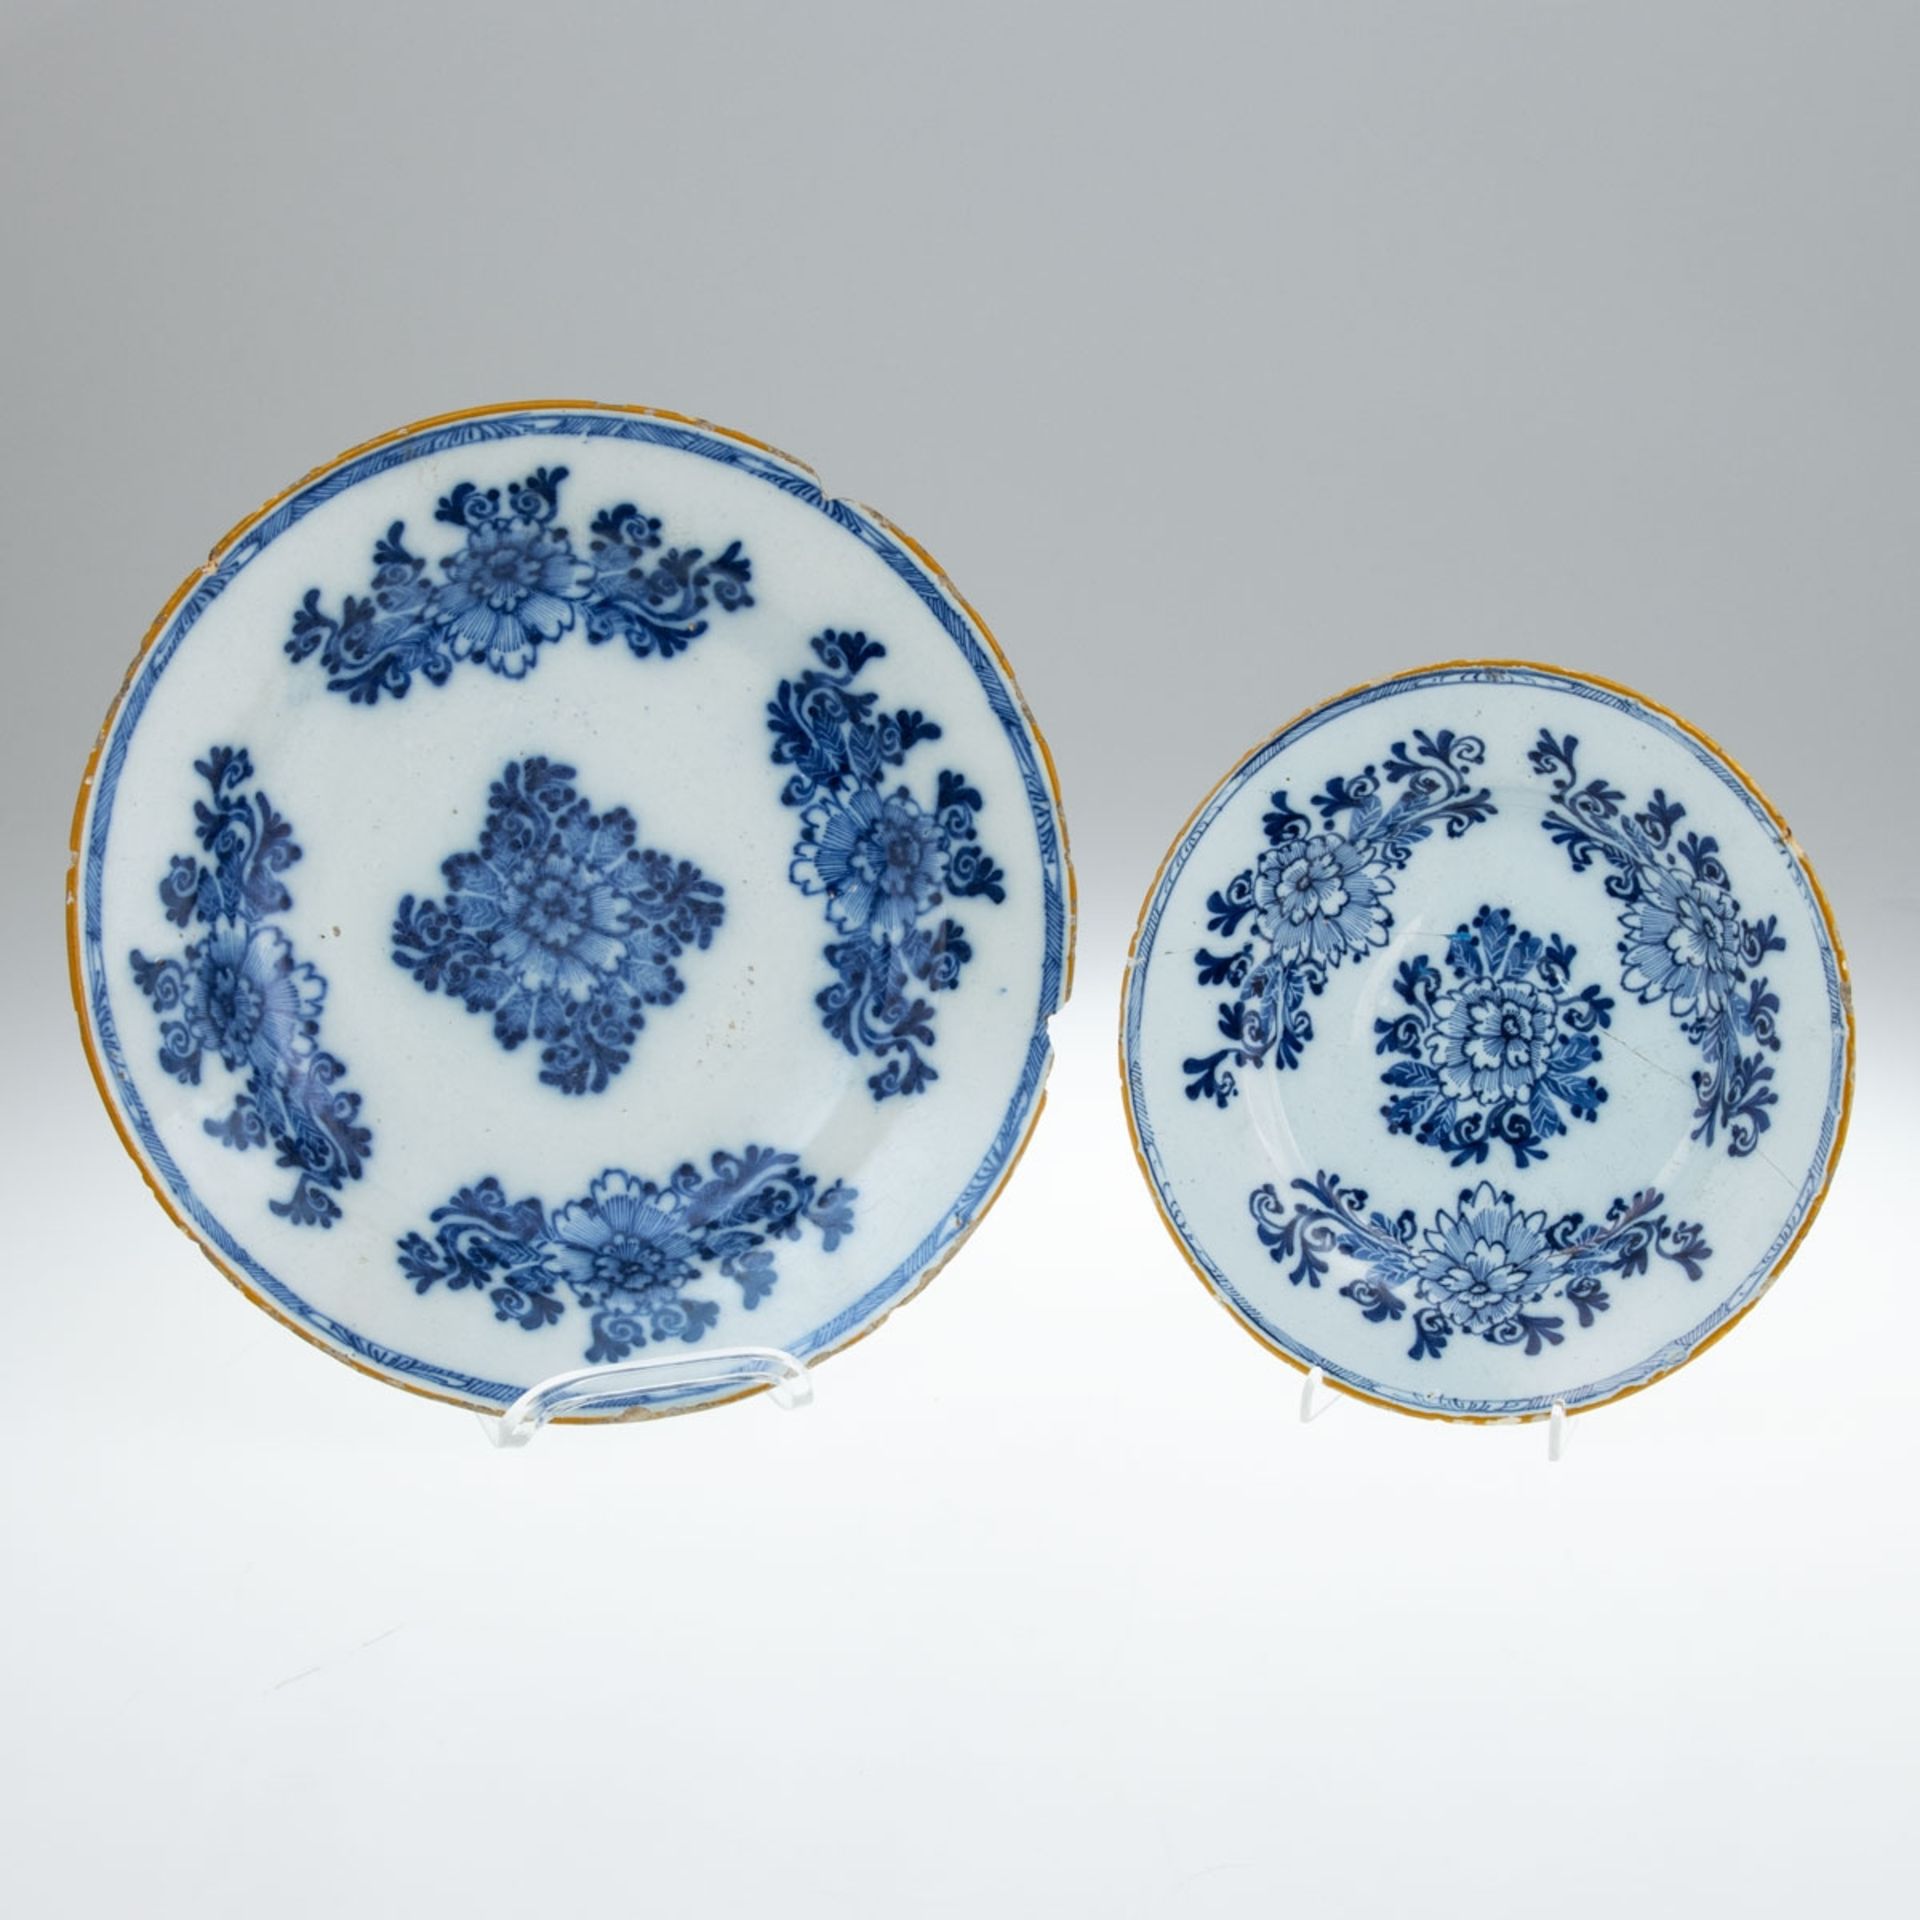 2 unterschiedliche Teller Stilisierte Blüte. De Porceleyne Bijl, Delft 18. Jh.